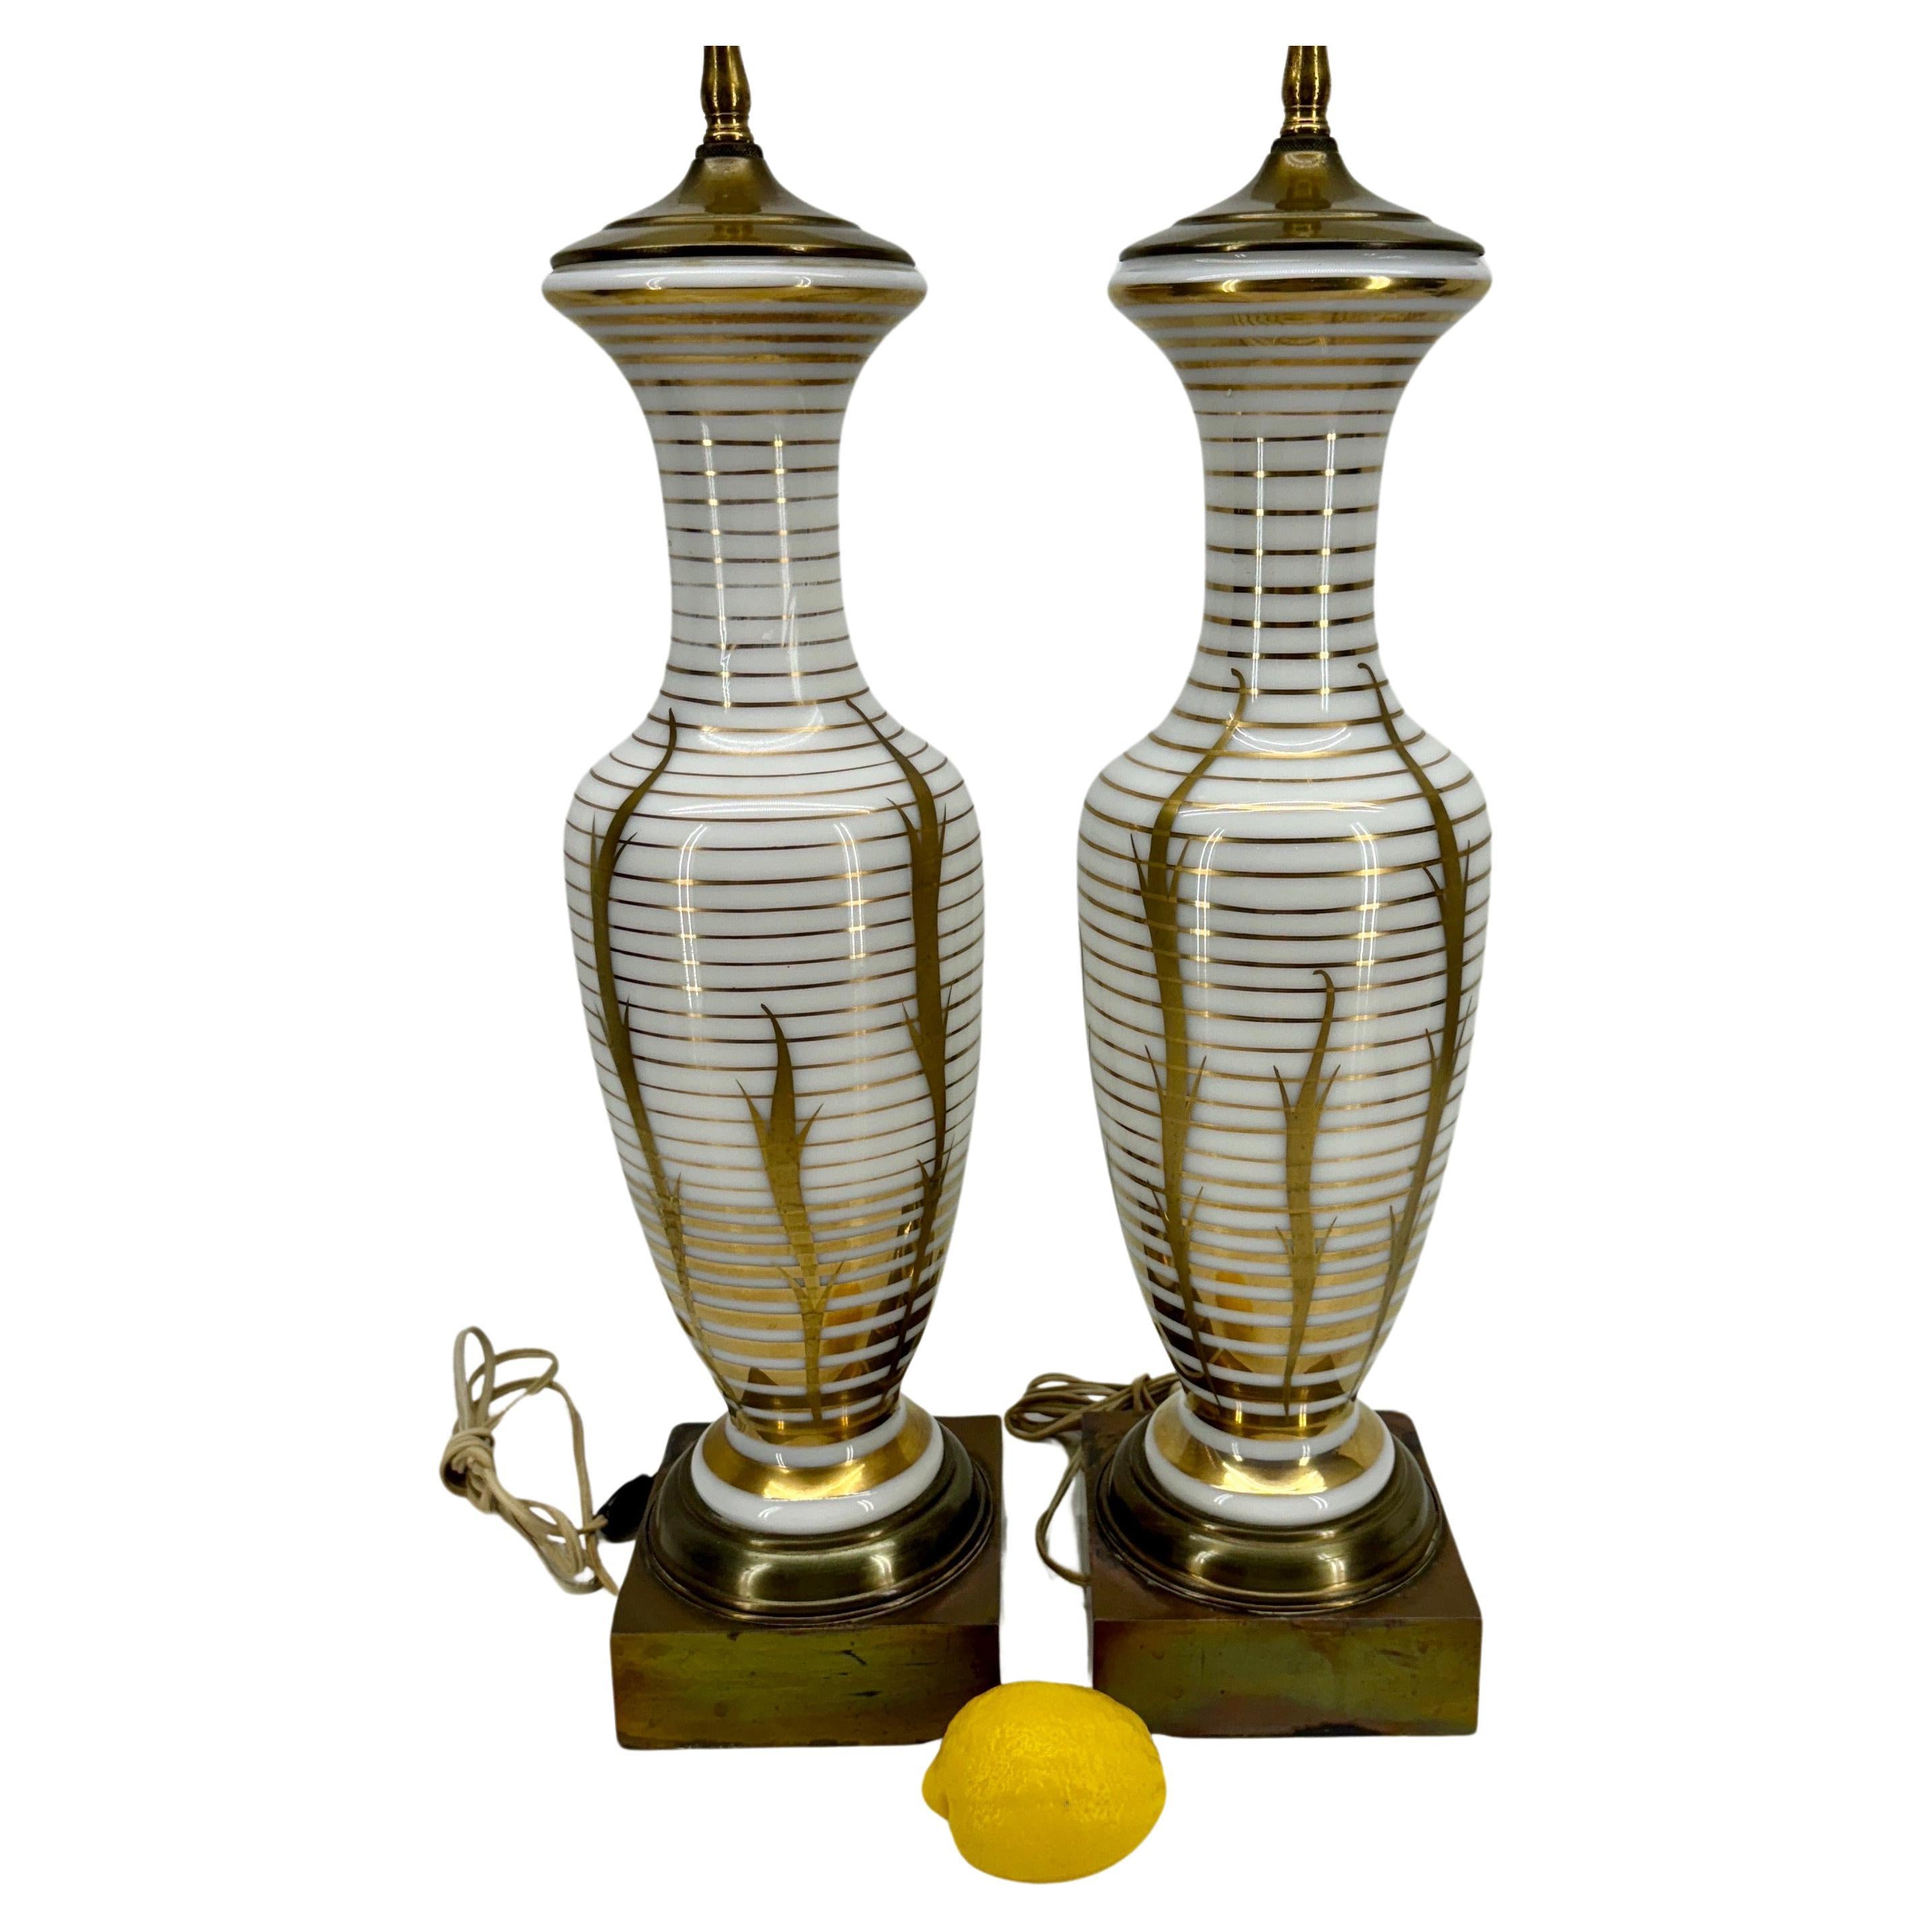 Opalglas vergoldete Tischlampen, ein Paar

Beleuchten Sie Ihr Zuhause mit diesen Tischlampen aus Opalglas mit Goldbändern und Streifen aus der Zeit des Mid Century Modern. Diese exquisiten Lampen sind nicht nur eine Lichtquelle, sondern auch ein